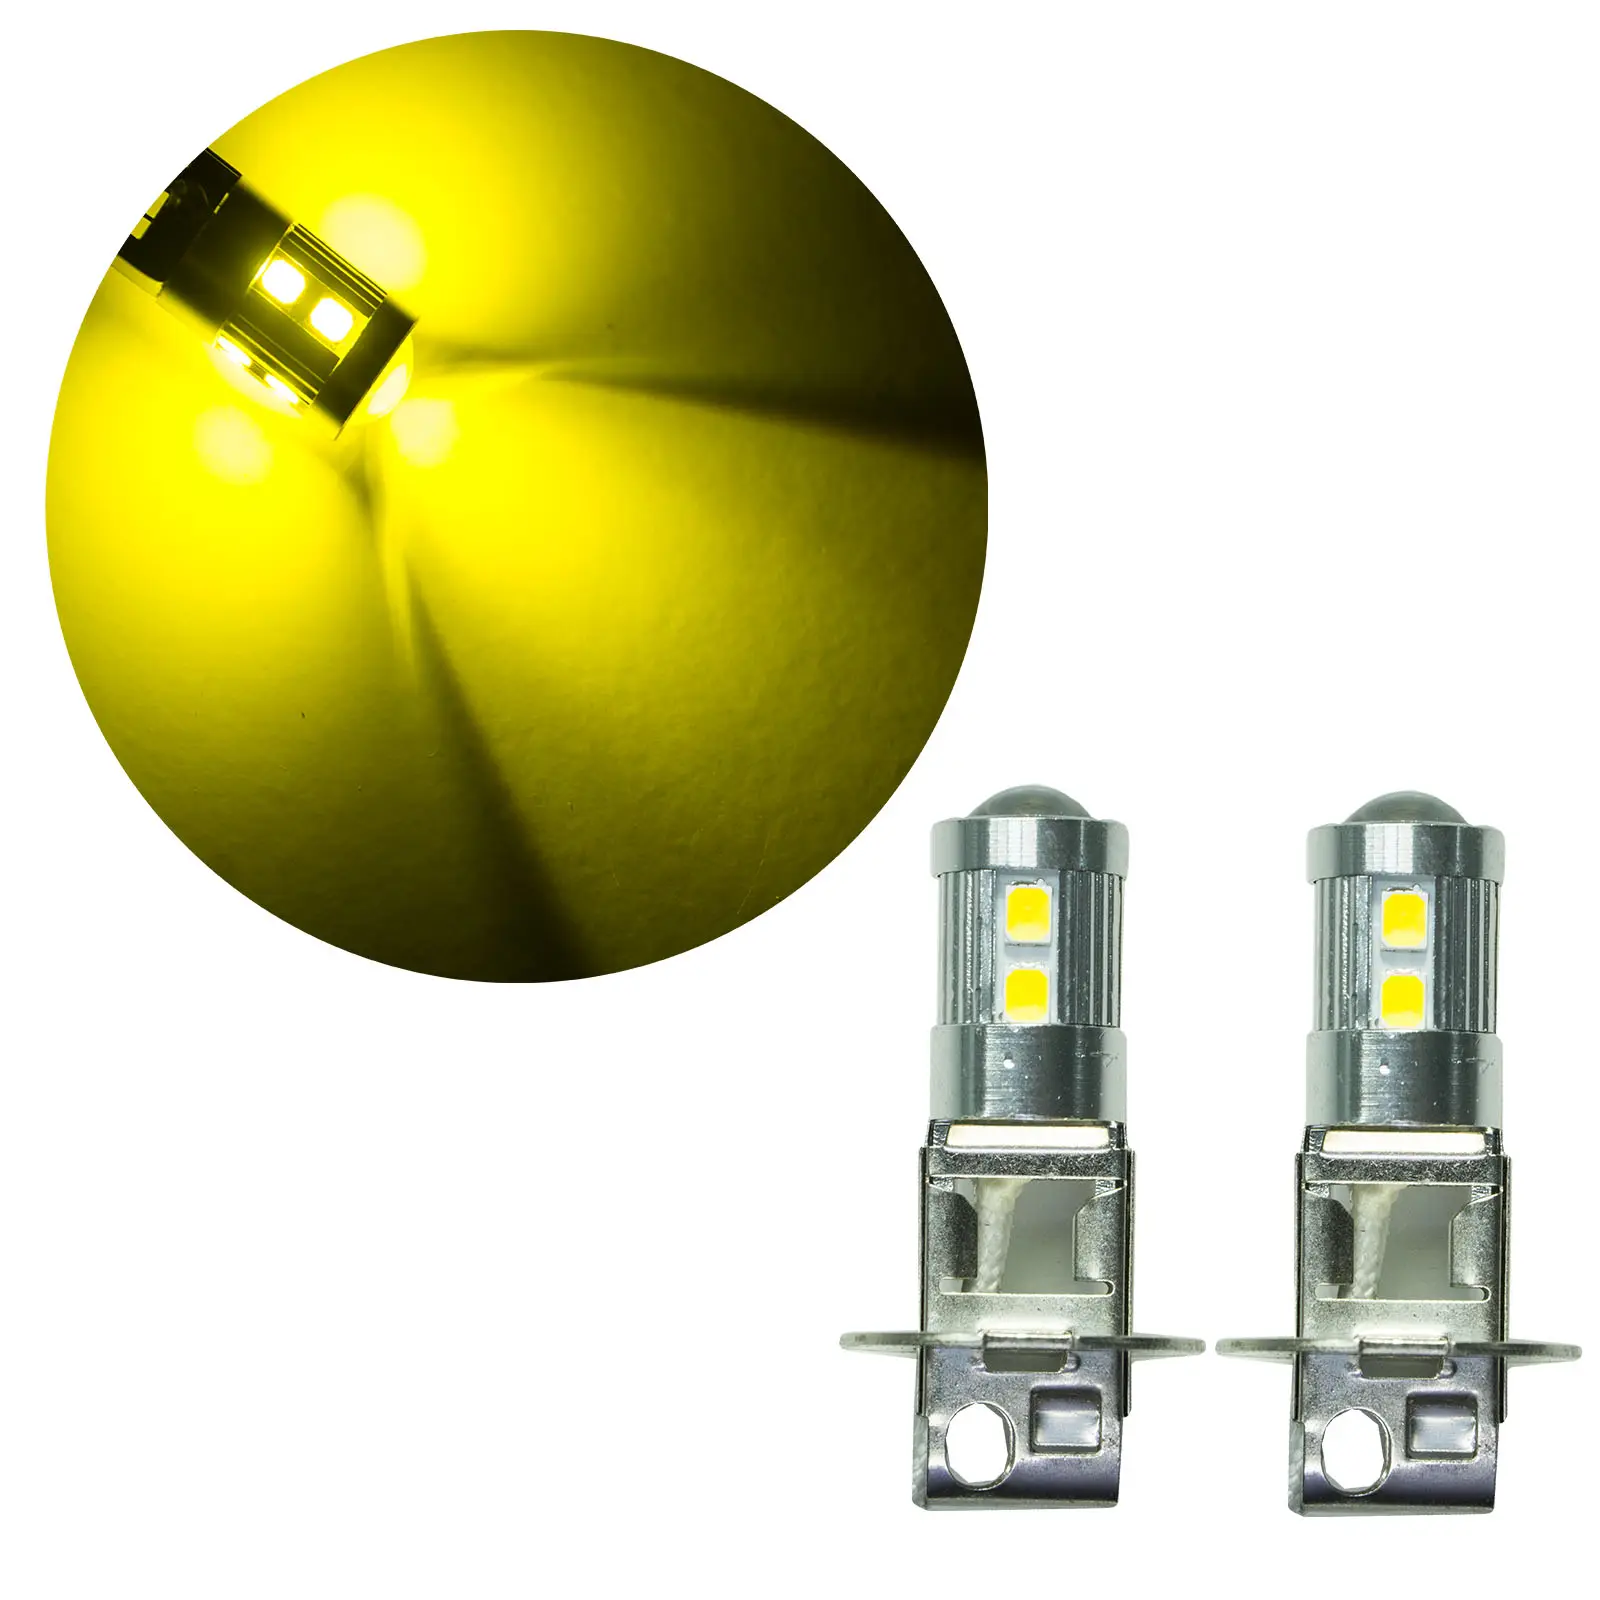 H3 anteriore led lampadina del segnale LED coppia reale giallo dorato 2835 30 SMD AUTO LED segnale indicatore di direzione lato lampadina 9-30V 7443 7440 T20 PA